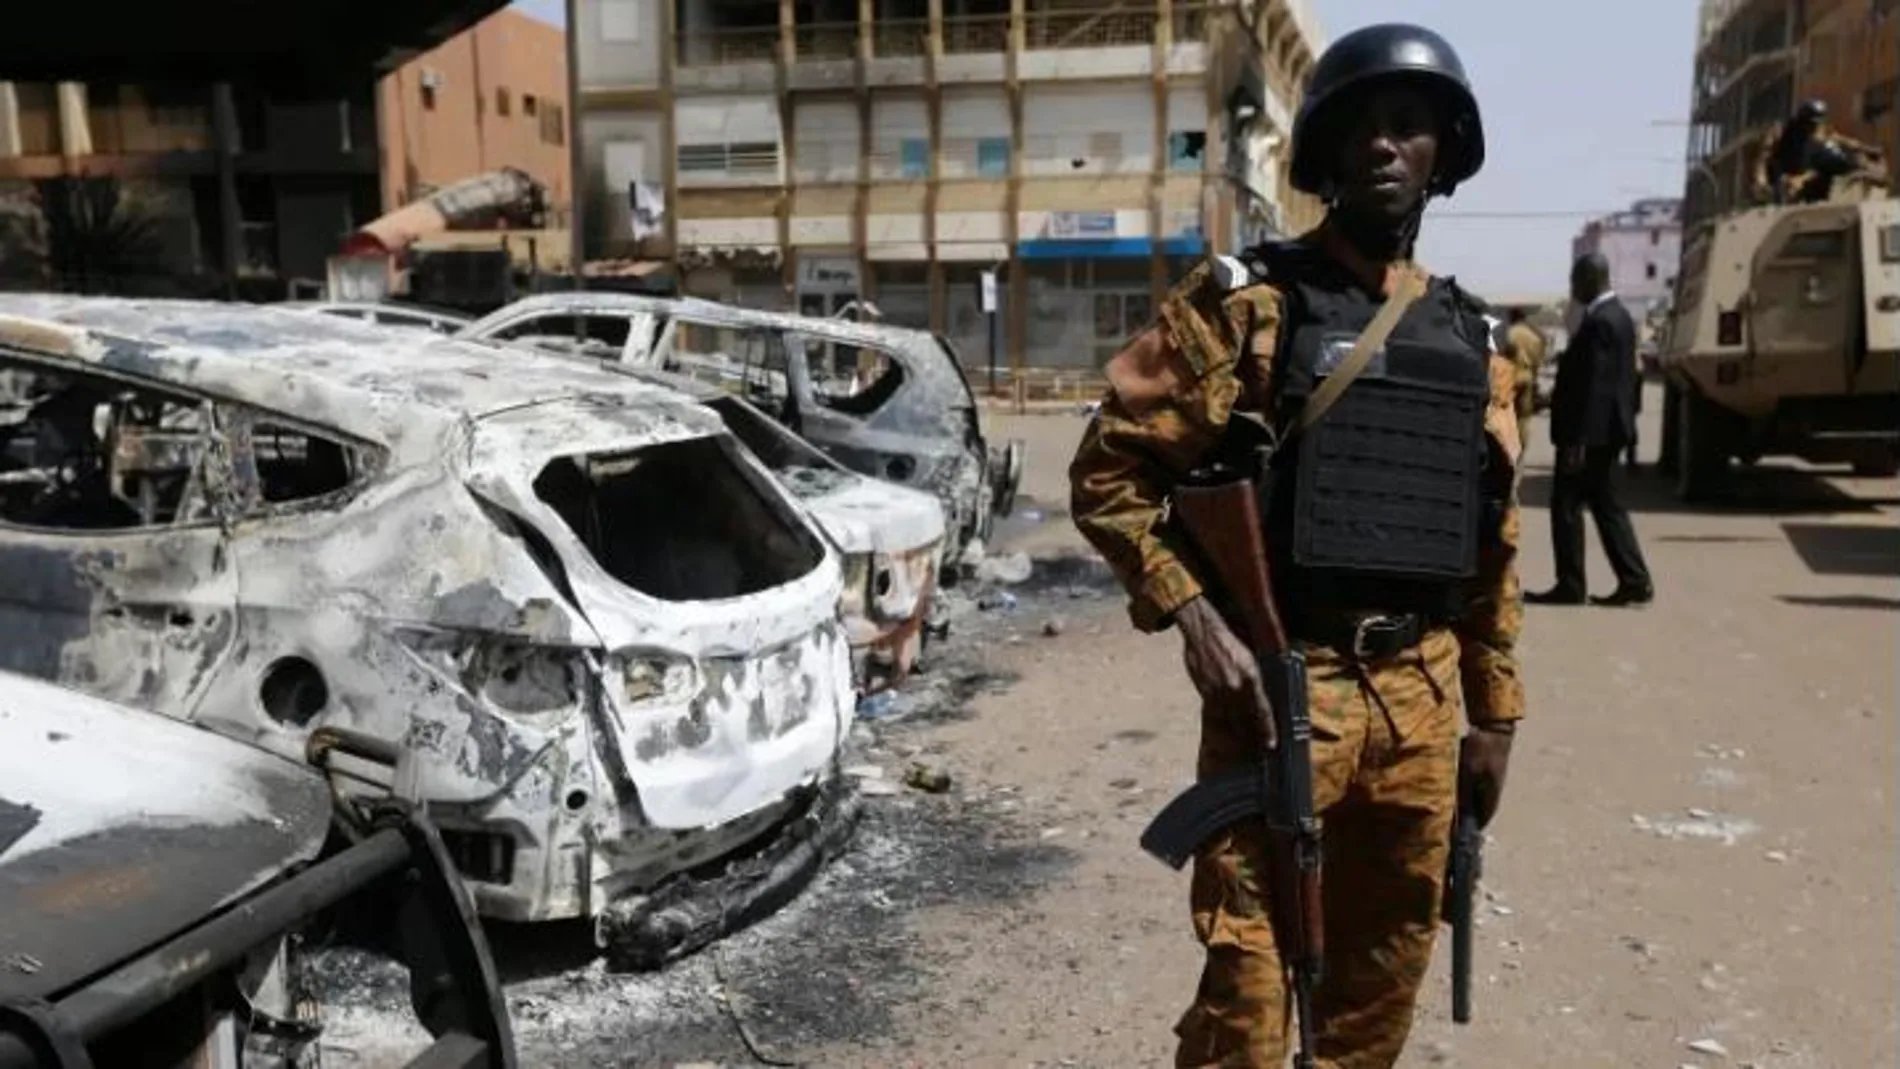 Un soldado en Burkina Faso tras un atentado yihadista en el hotel Splendid de Ouagadougou donde murieron seis canadienses / Ap